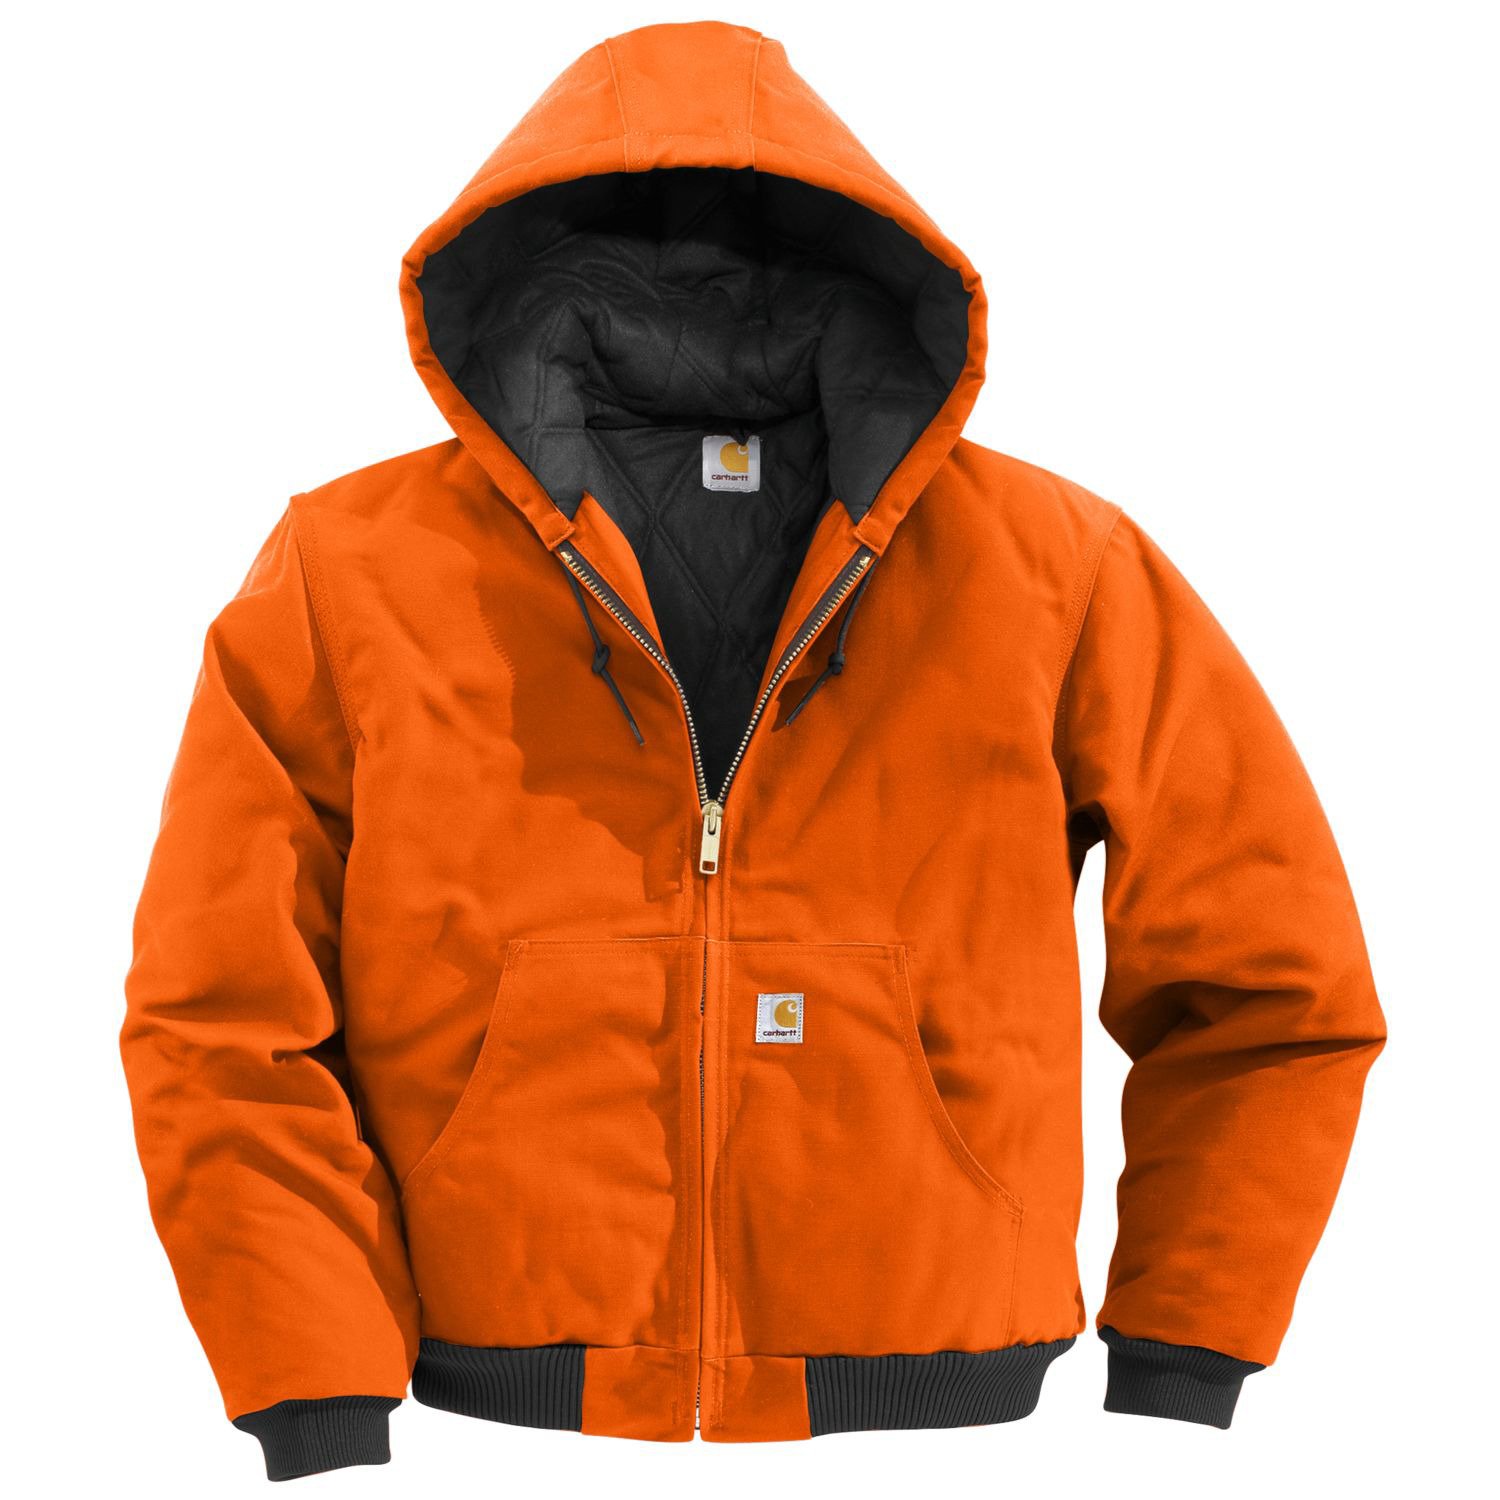 Men's Jackets & Outerwear | Down Jackets, Coats, Windbreakers & Hoodies